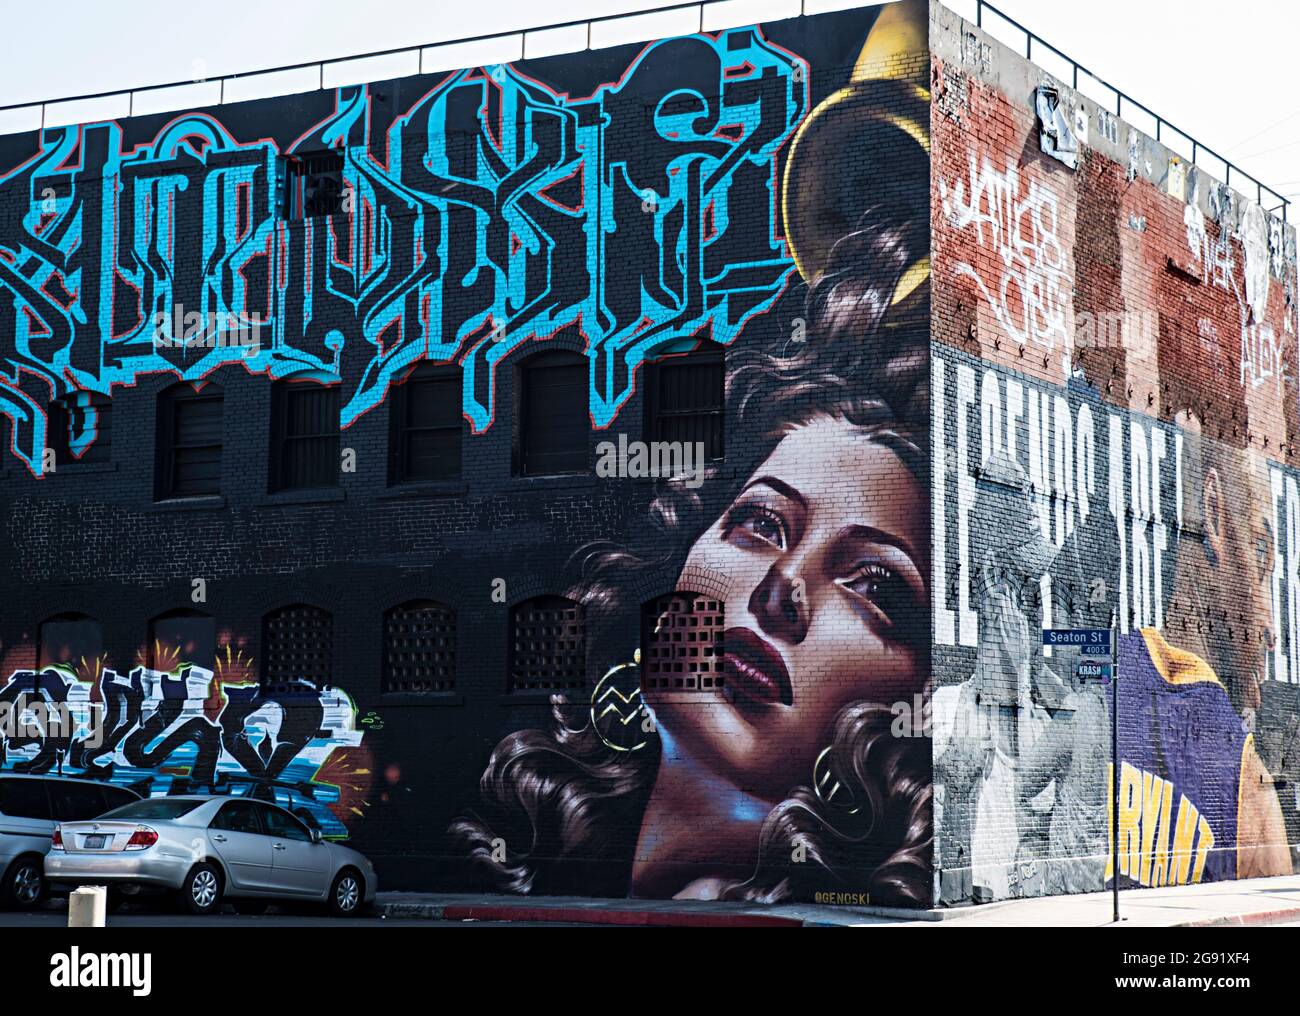 Peintures murales et art de rue du quartier des arts de Los Angeles en Californie Banque D'Images